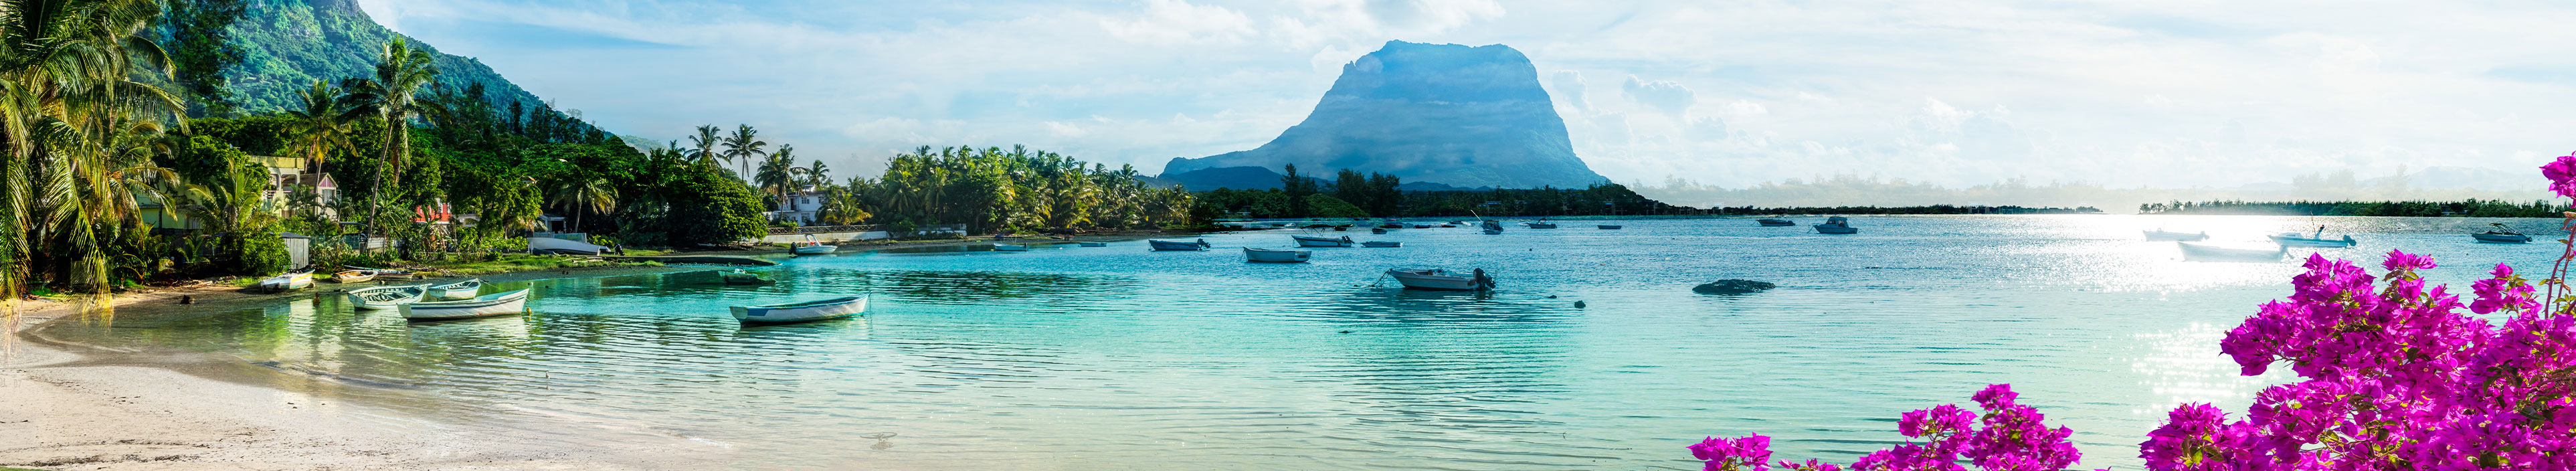 Urlaub Mauritius. Viele kleine Fischerboote auf dem Meer, im Hintergrund grüne Landschaft und Berge. 